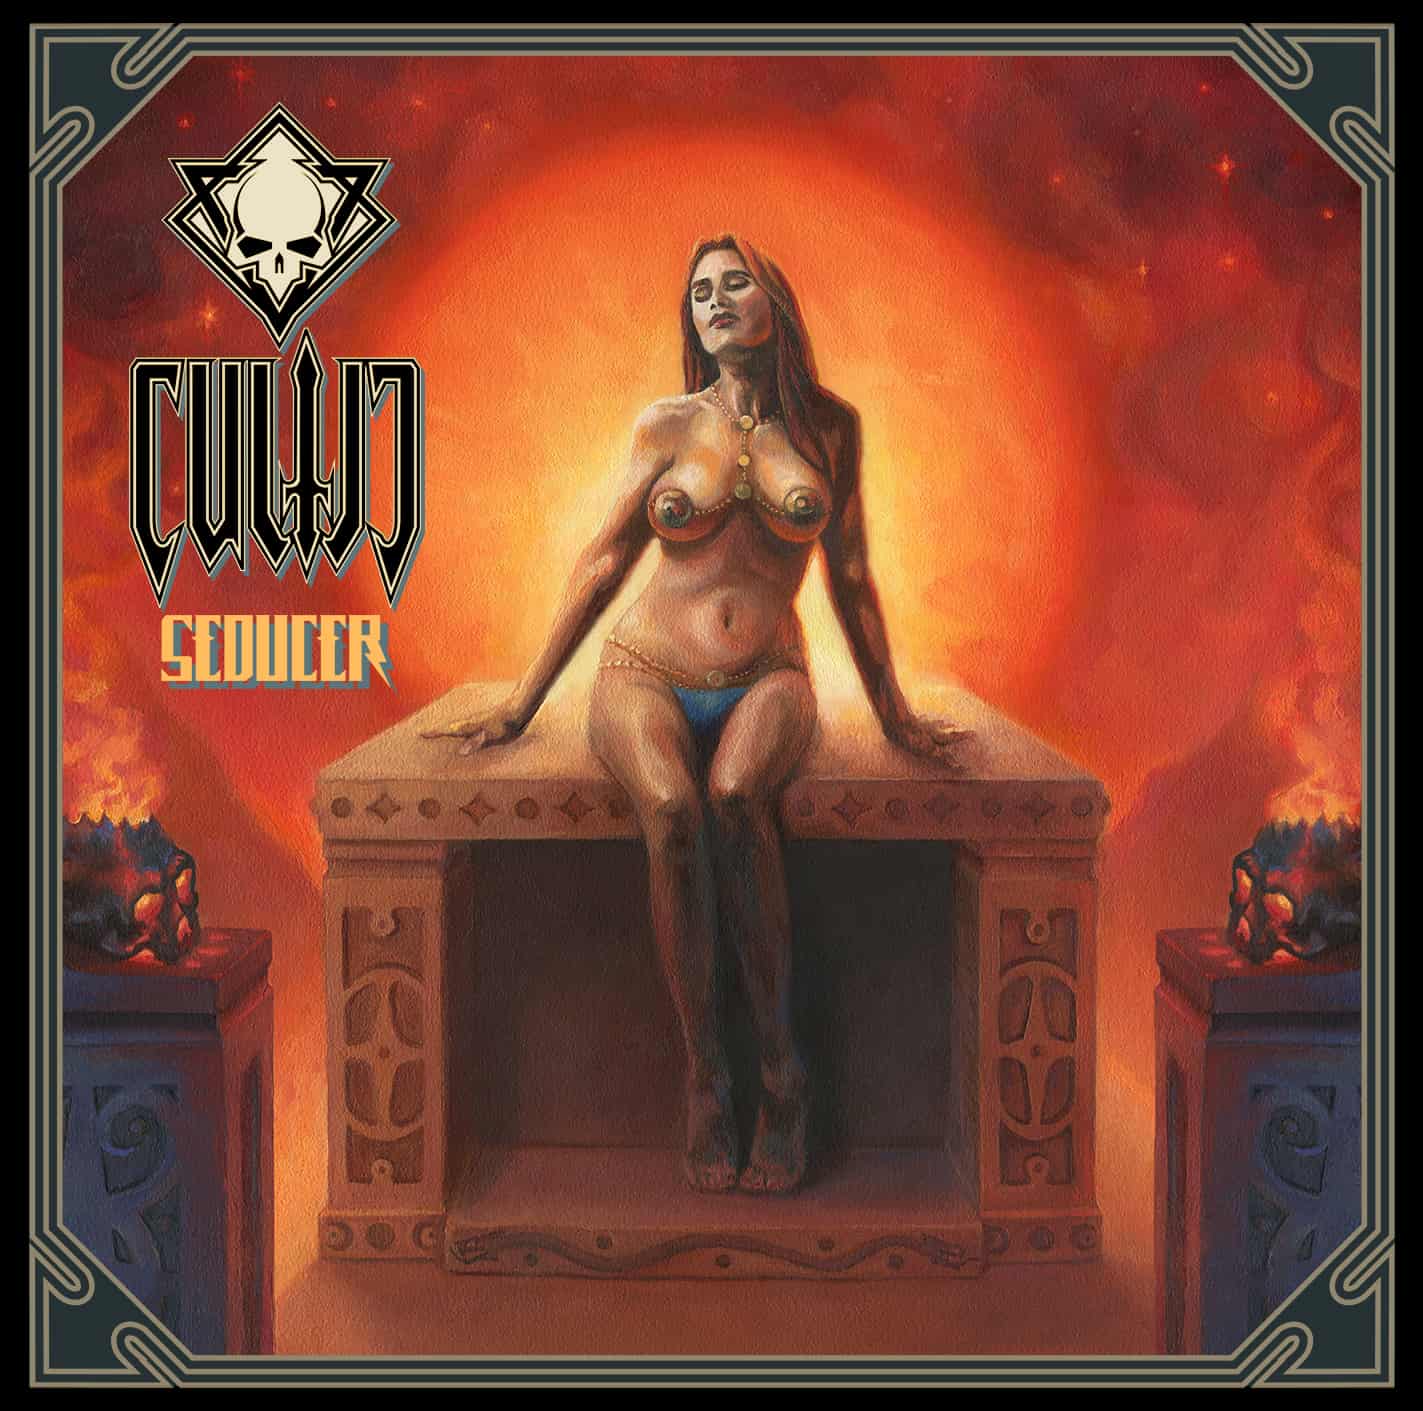 Cultic Seducer Album Cover